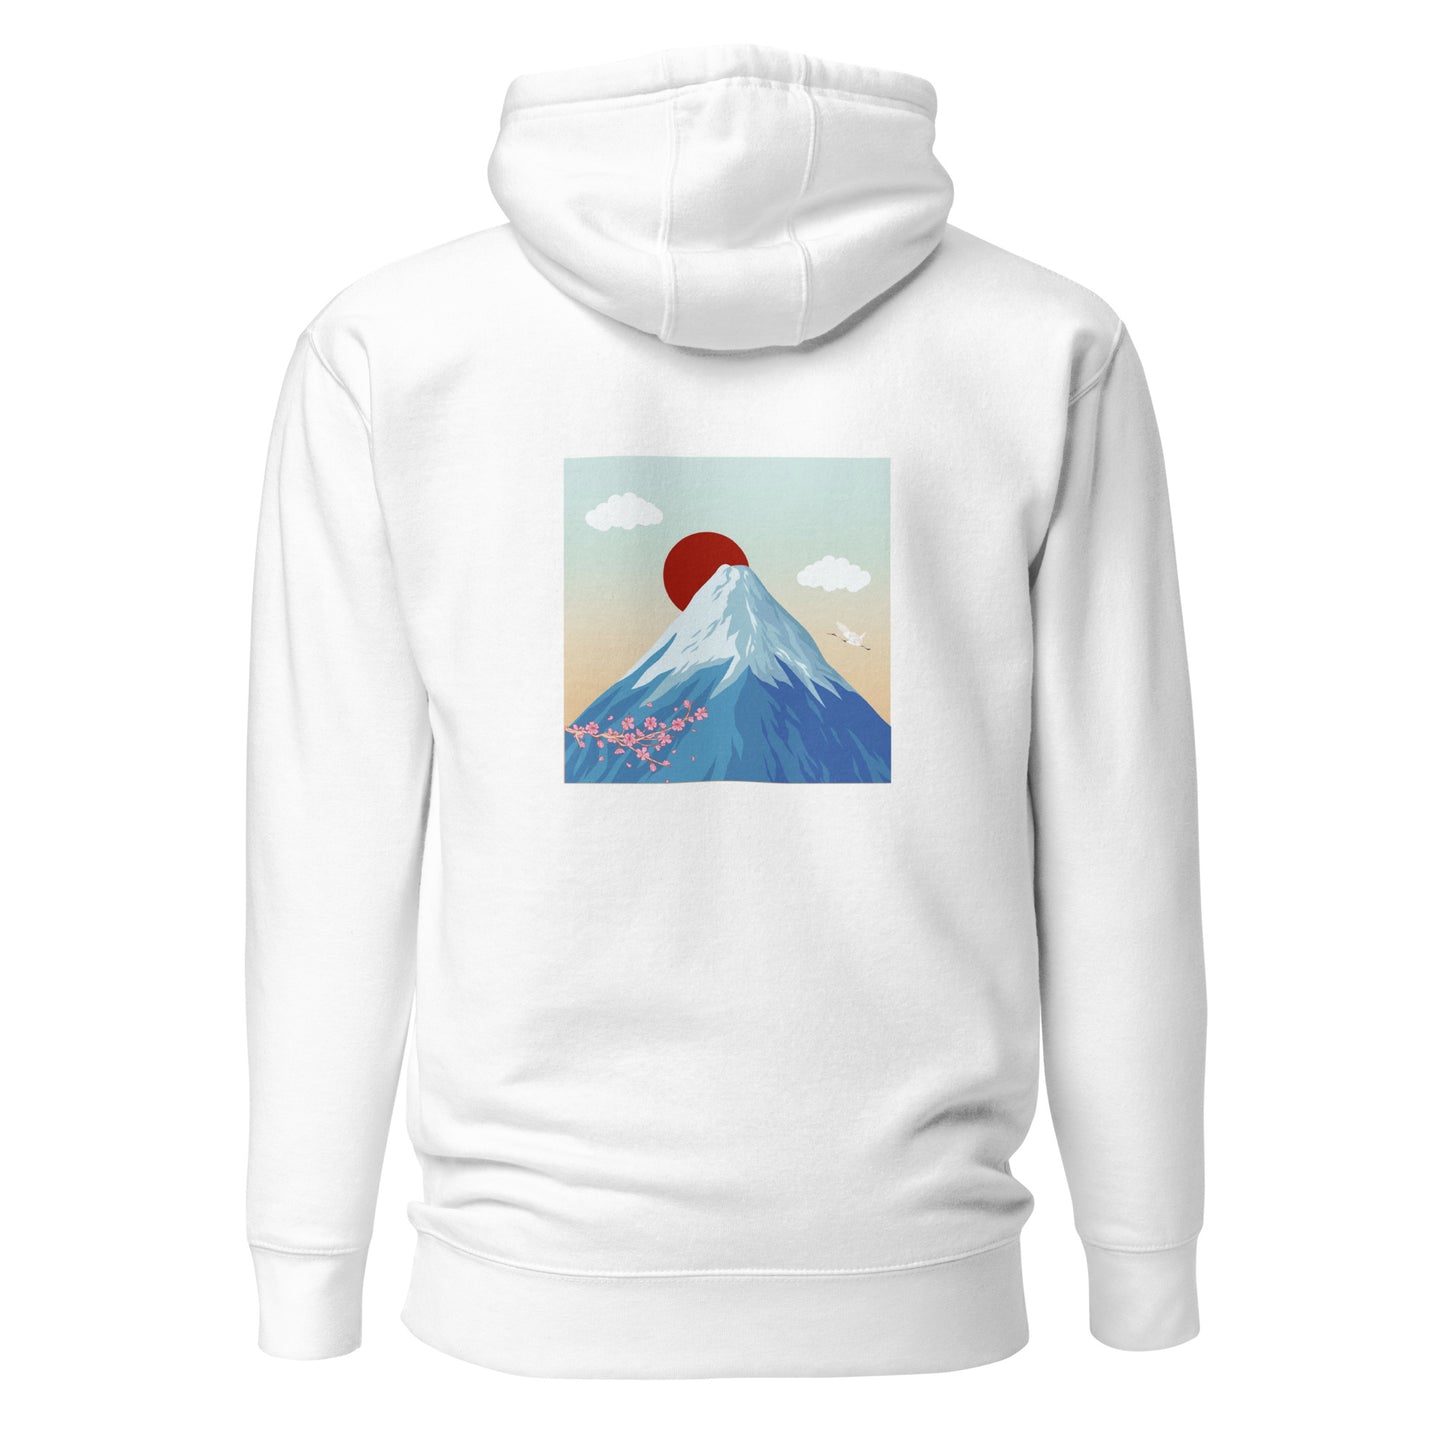 Mount Fuji Sweater